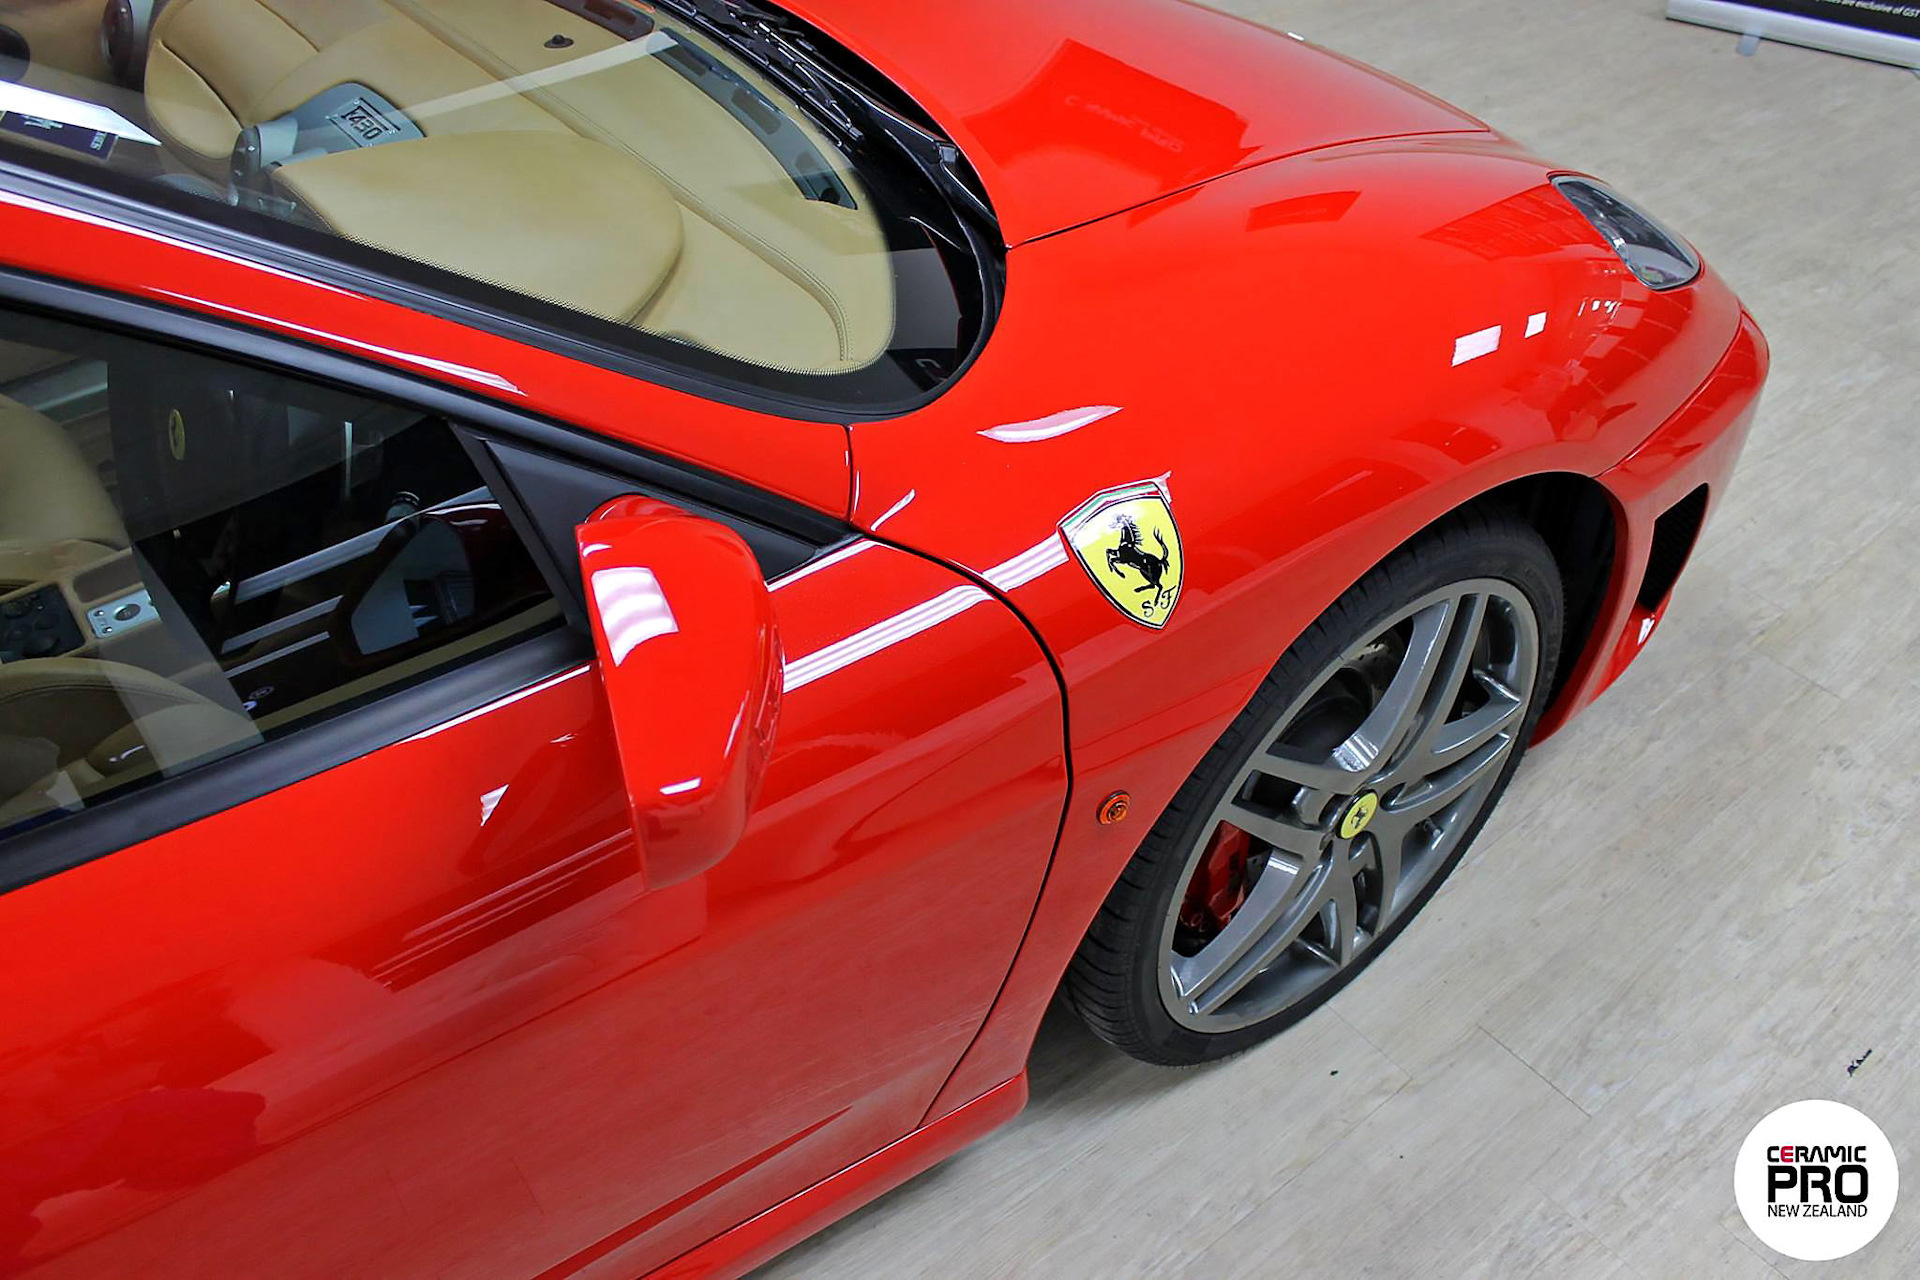 Алый цвет автомобиля Ferrari F430 засиял после защиты Ceramic Pro.